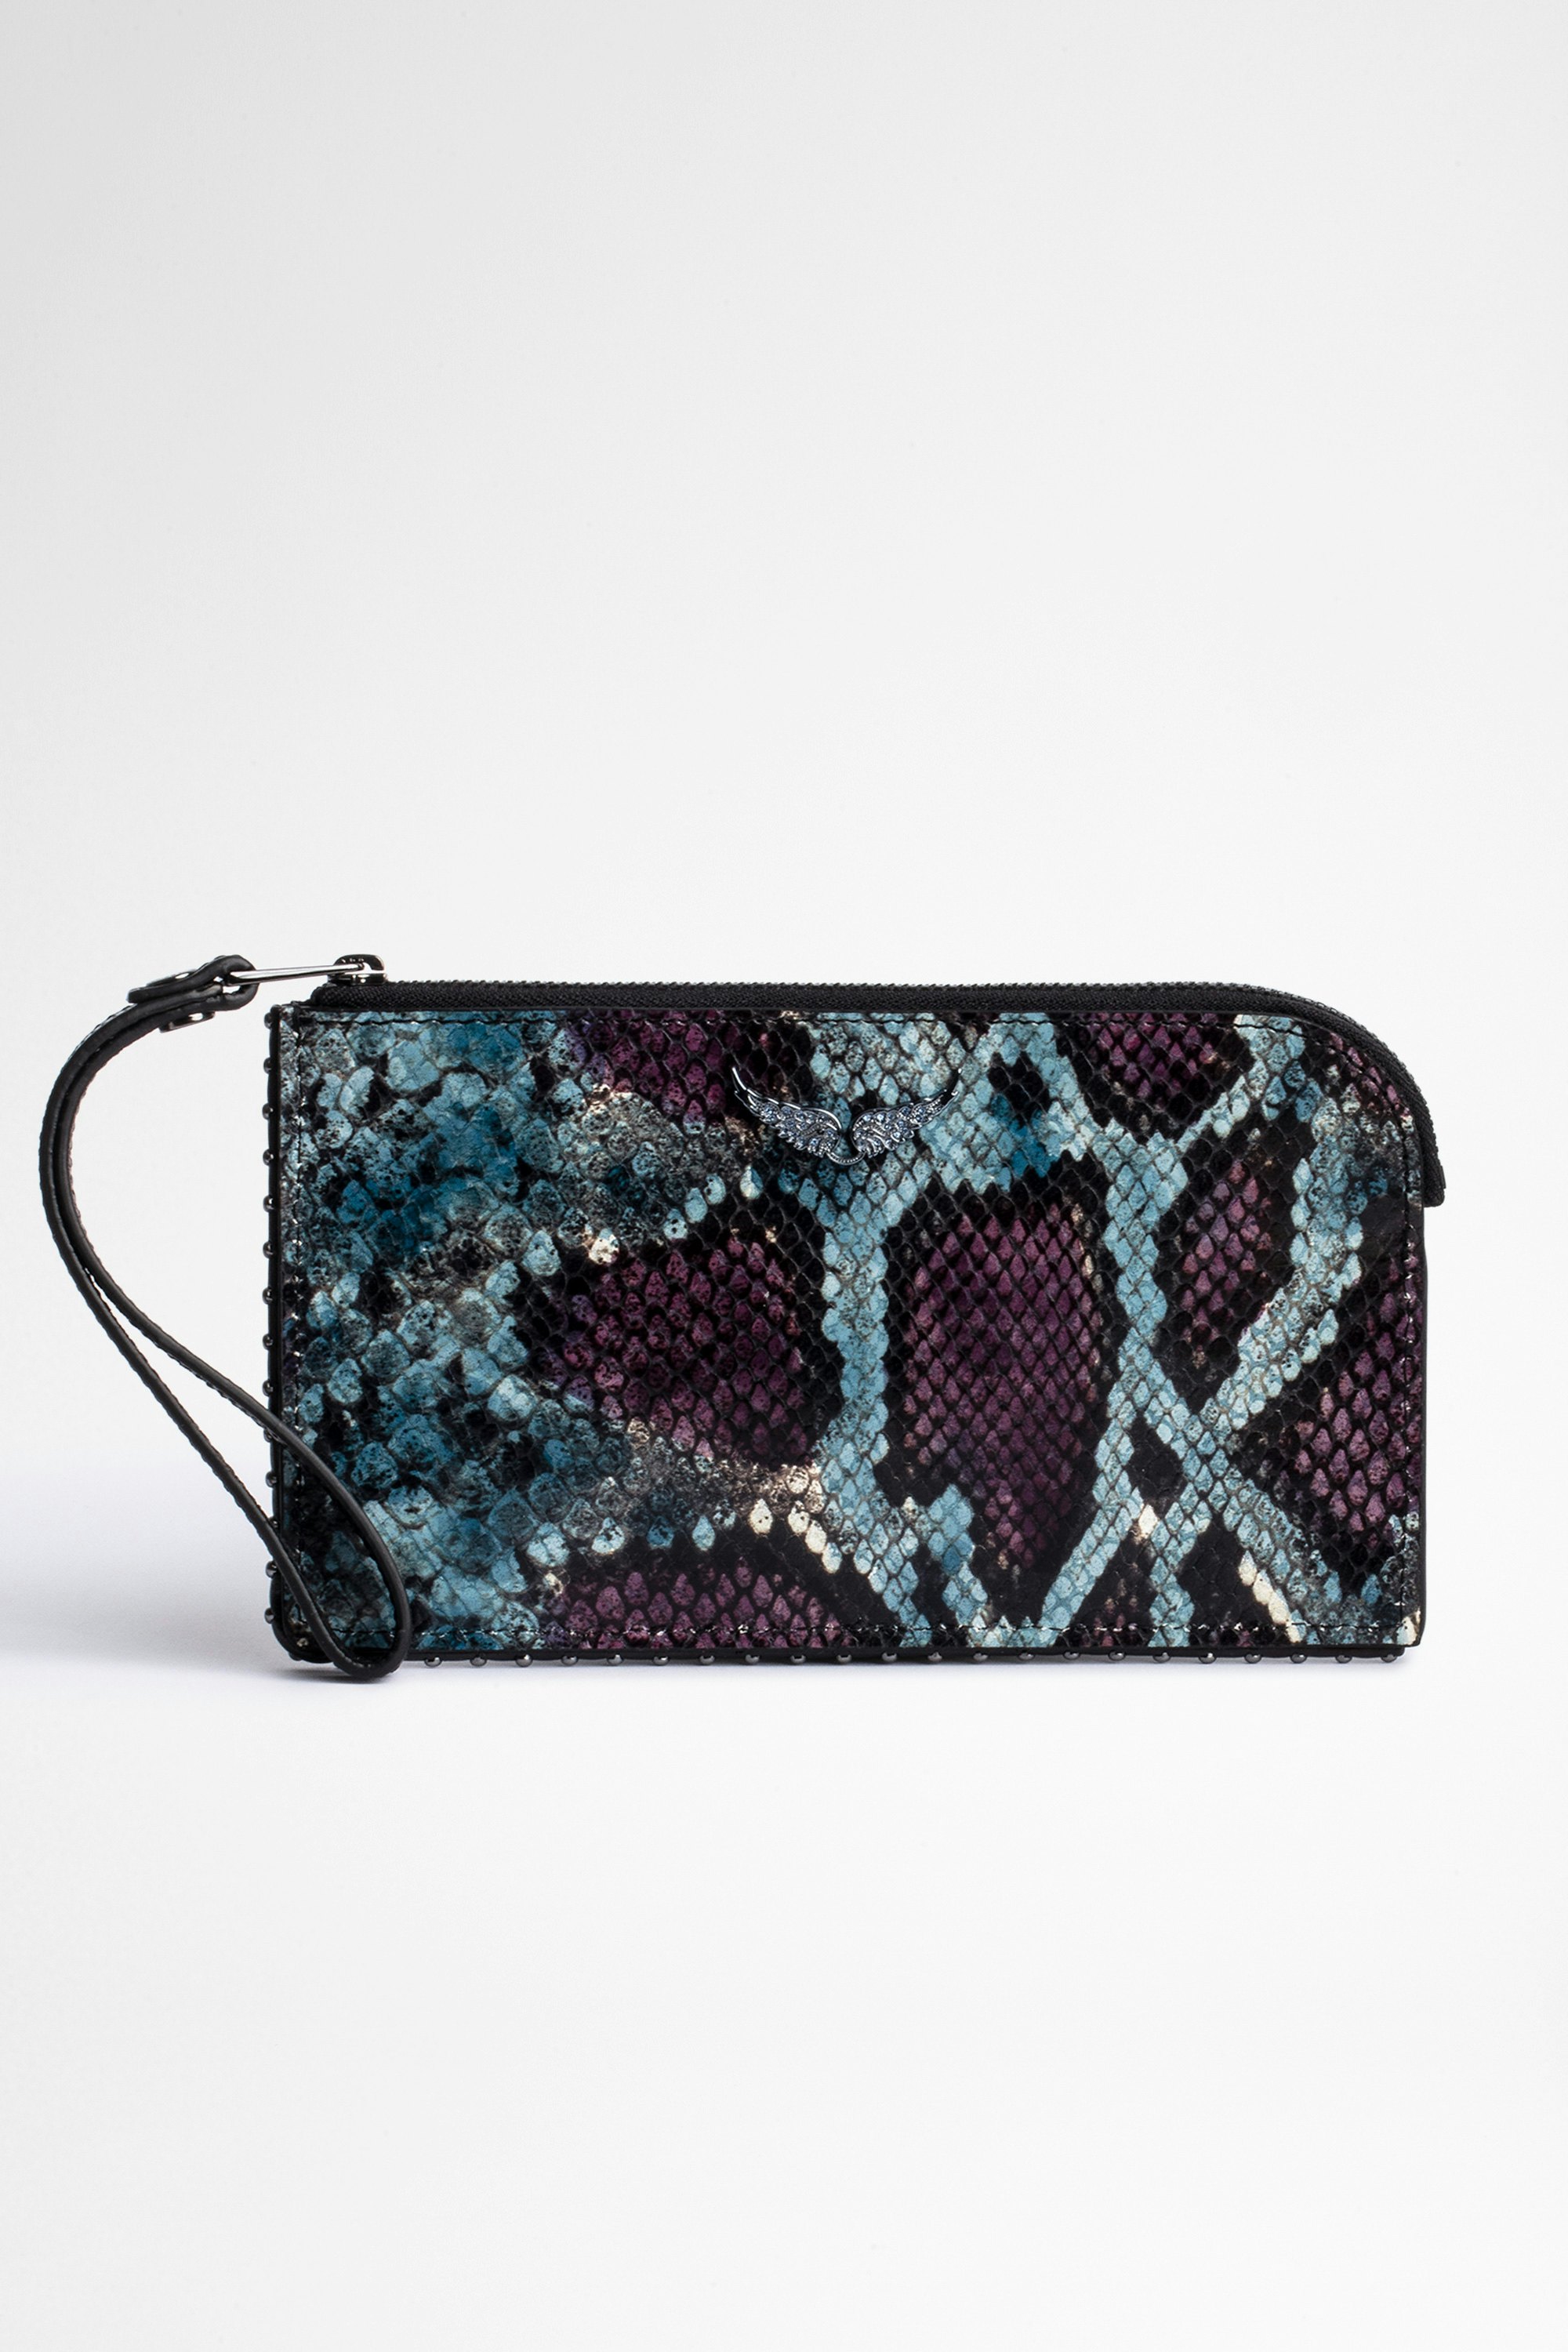 Phone Wallet Pouch Women's purple snakeskin-effect leather pouch